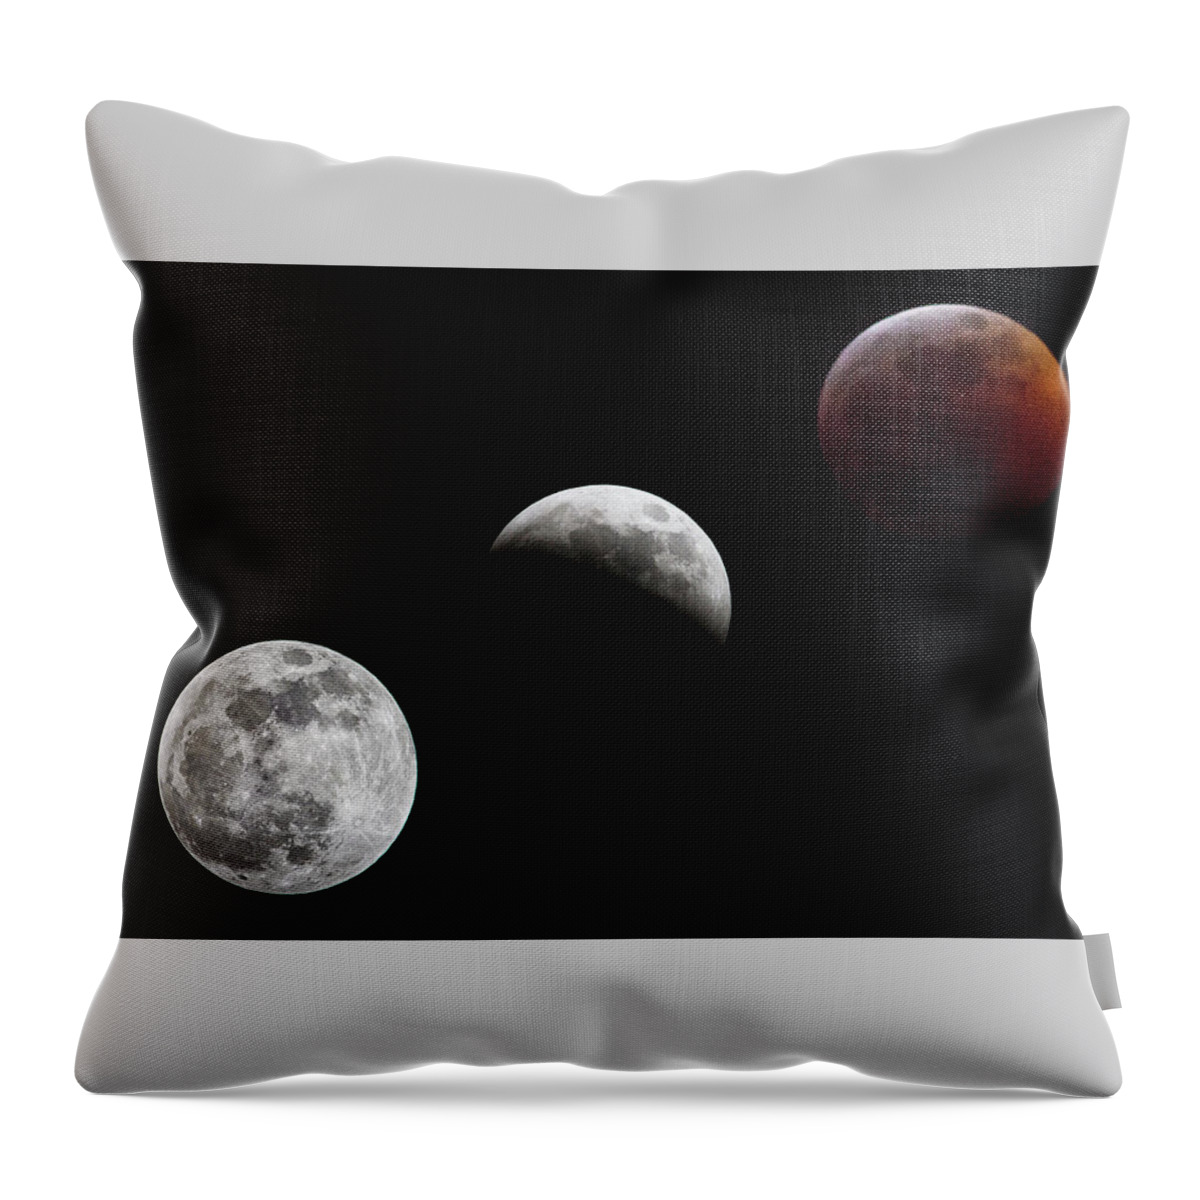 Lunar Throw Pillow featuring the photograph Lunar Eclipse by Bob Decker